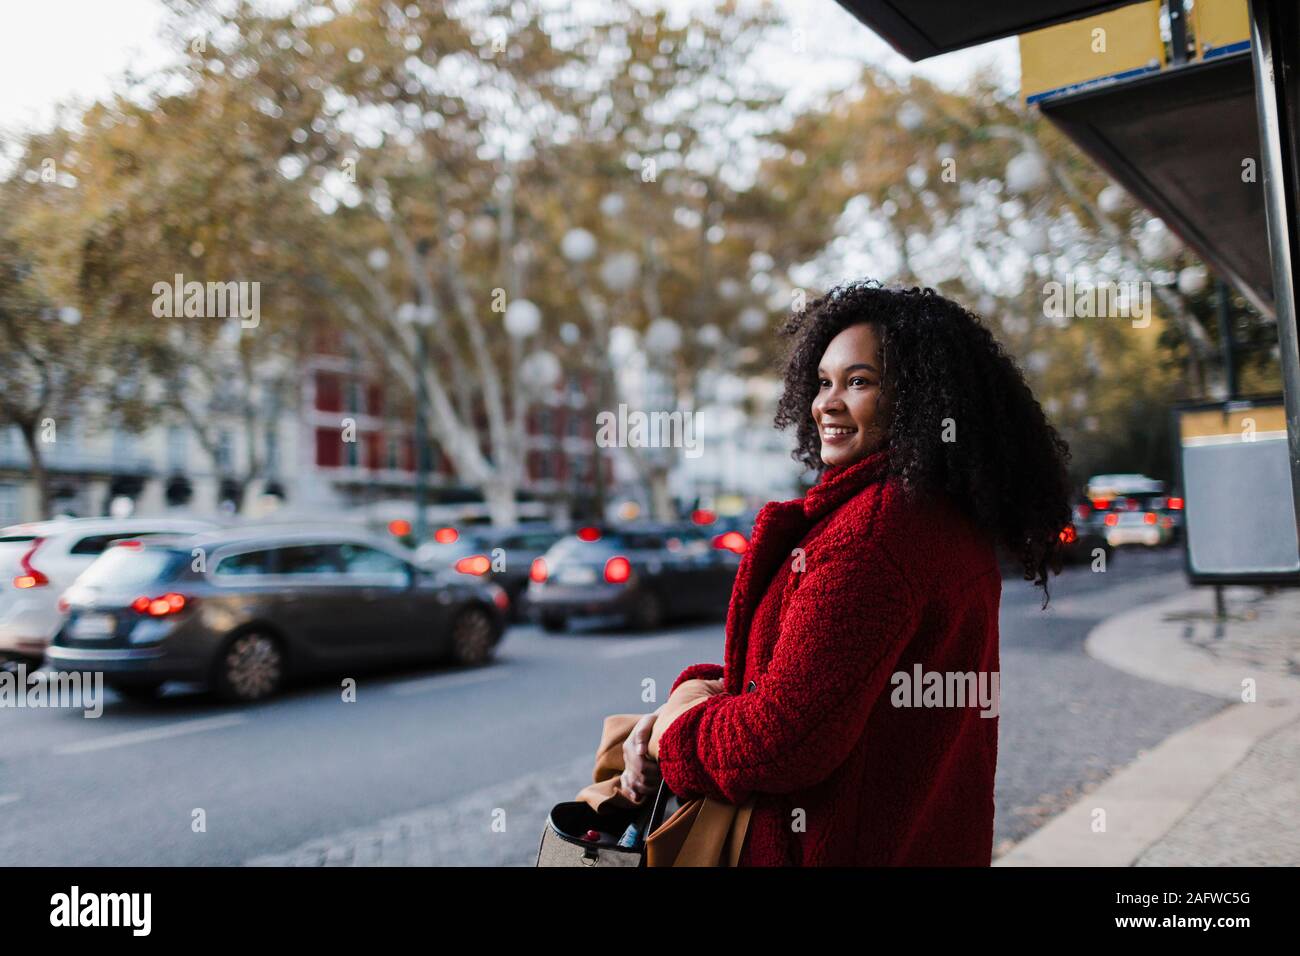 Jeune femme sur un trottoir urbain Banque D'Images